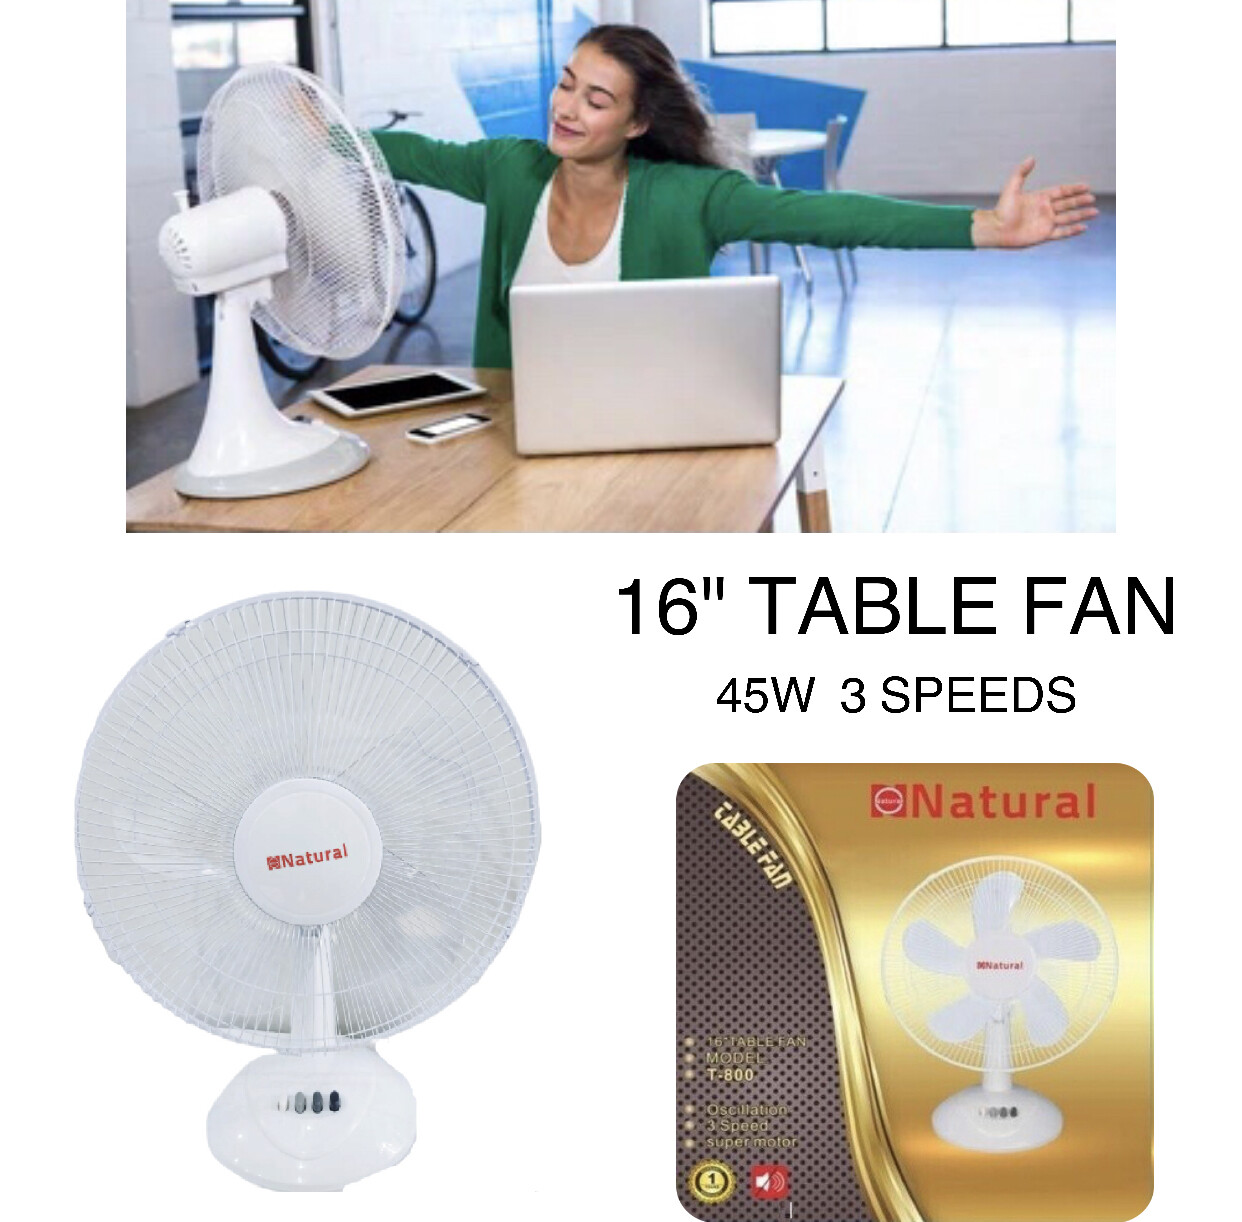 16" Table Fan